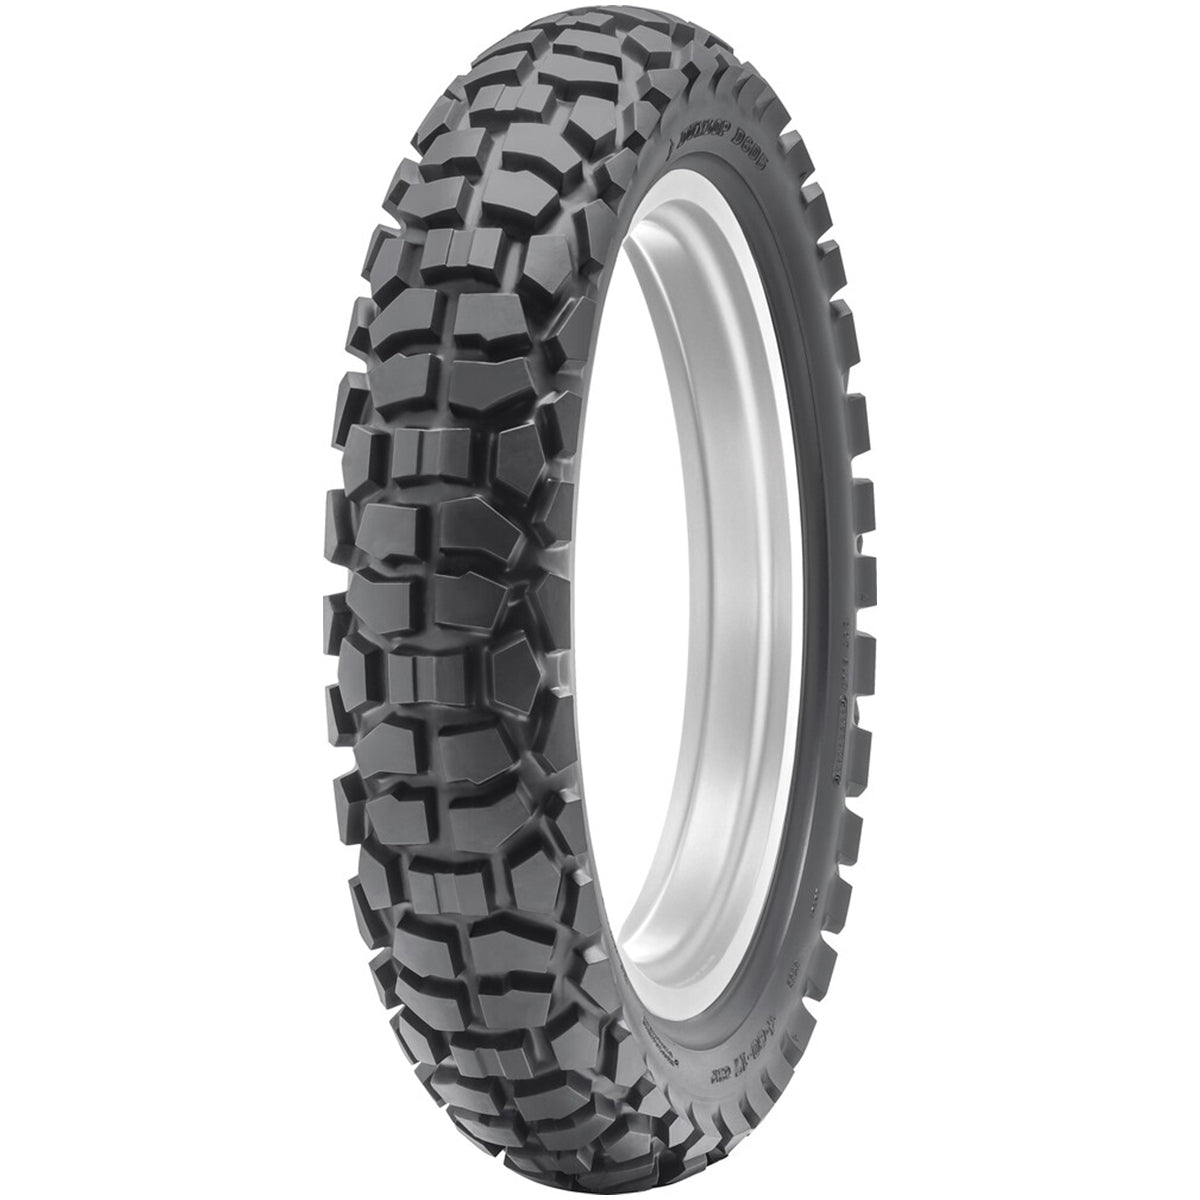 Dunlop D605 17" Rear Off-Road Tires-0317